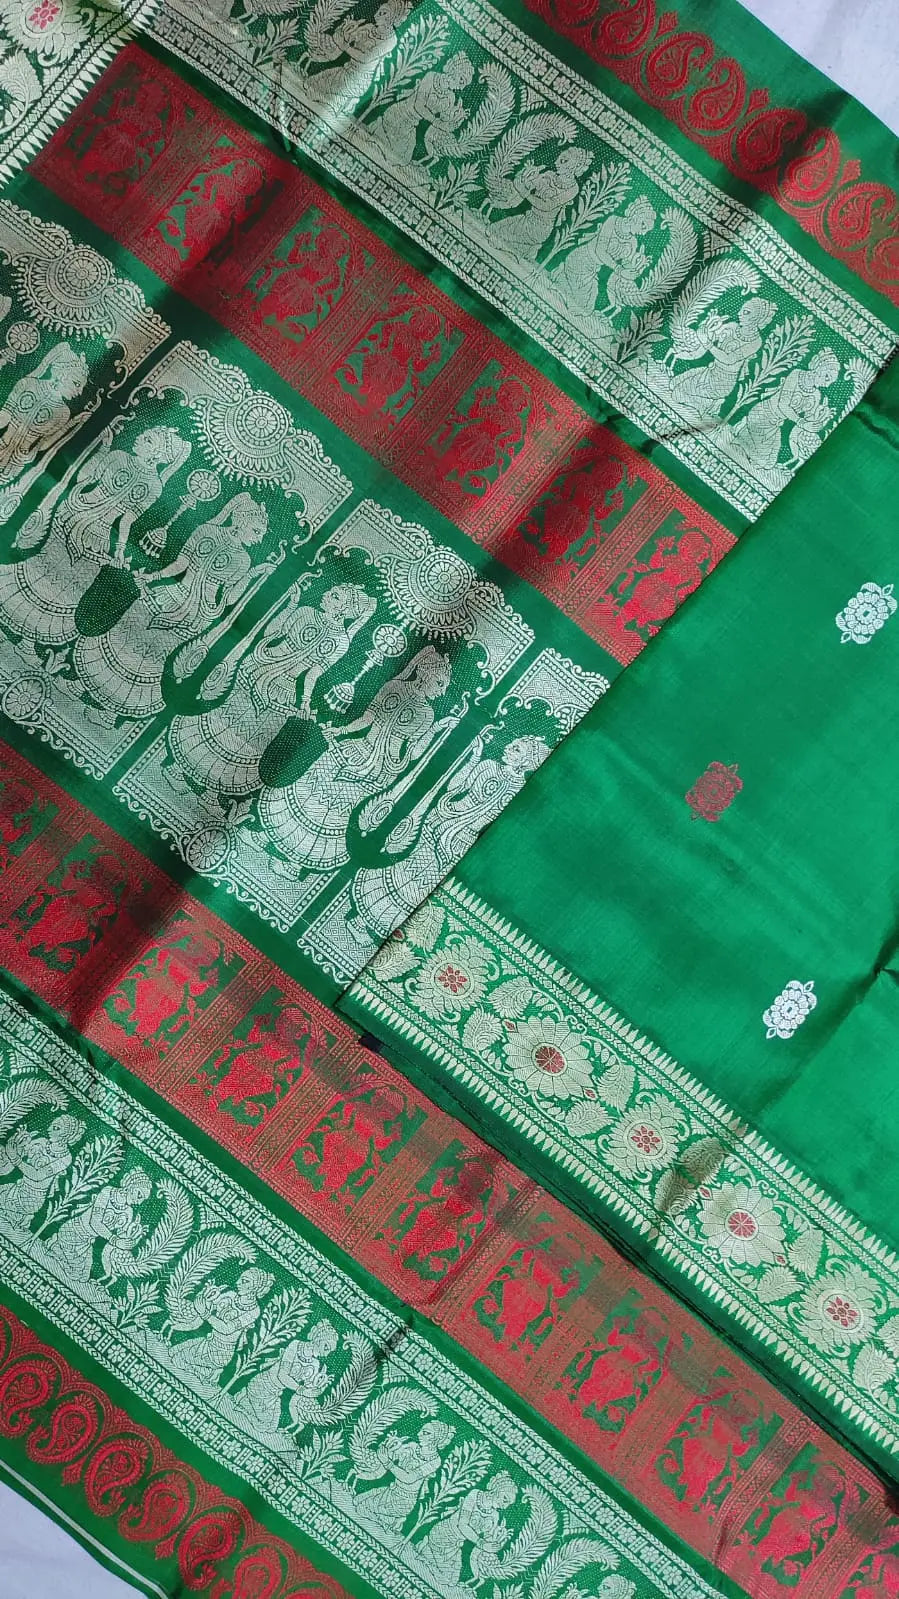 Baluchori saree of Bengal green colour